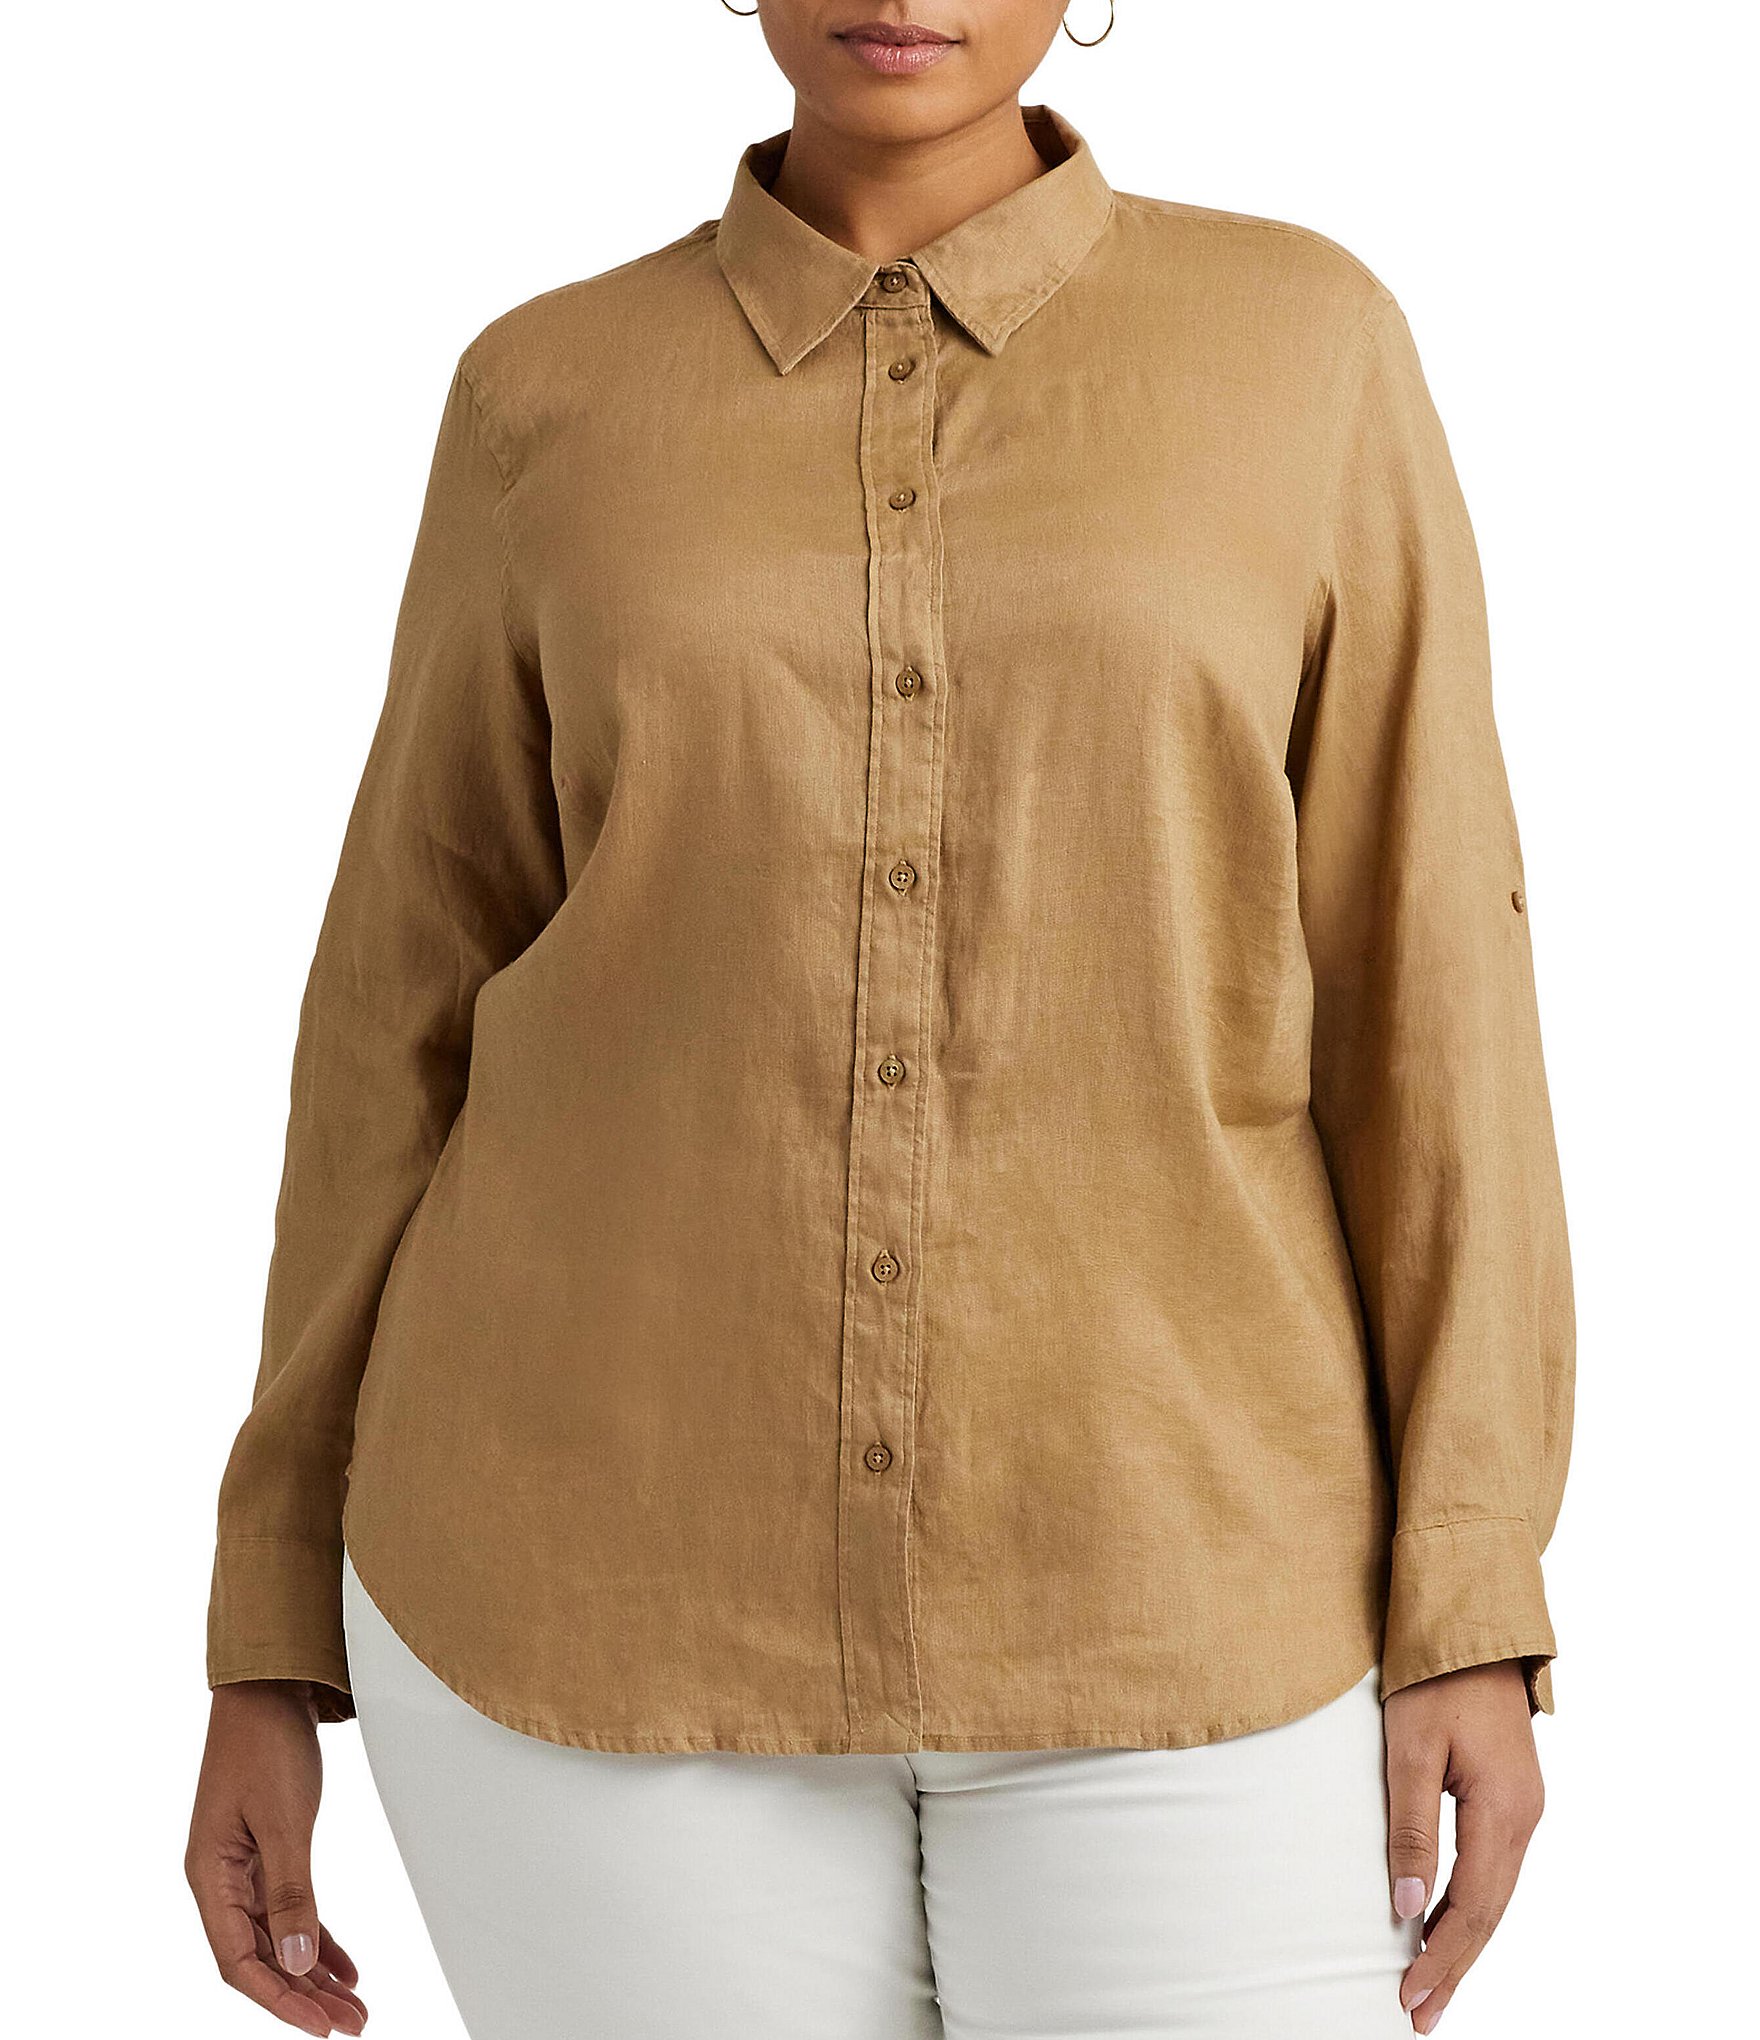 Flax Women's Button Down Shirt Roll Tab Long Sleeve Lightweight